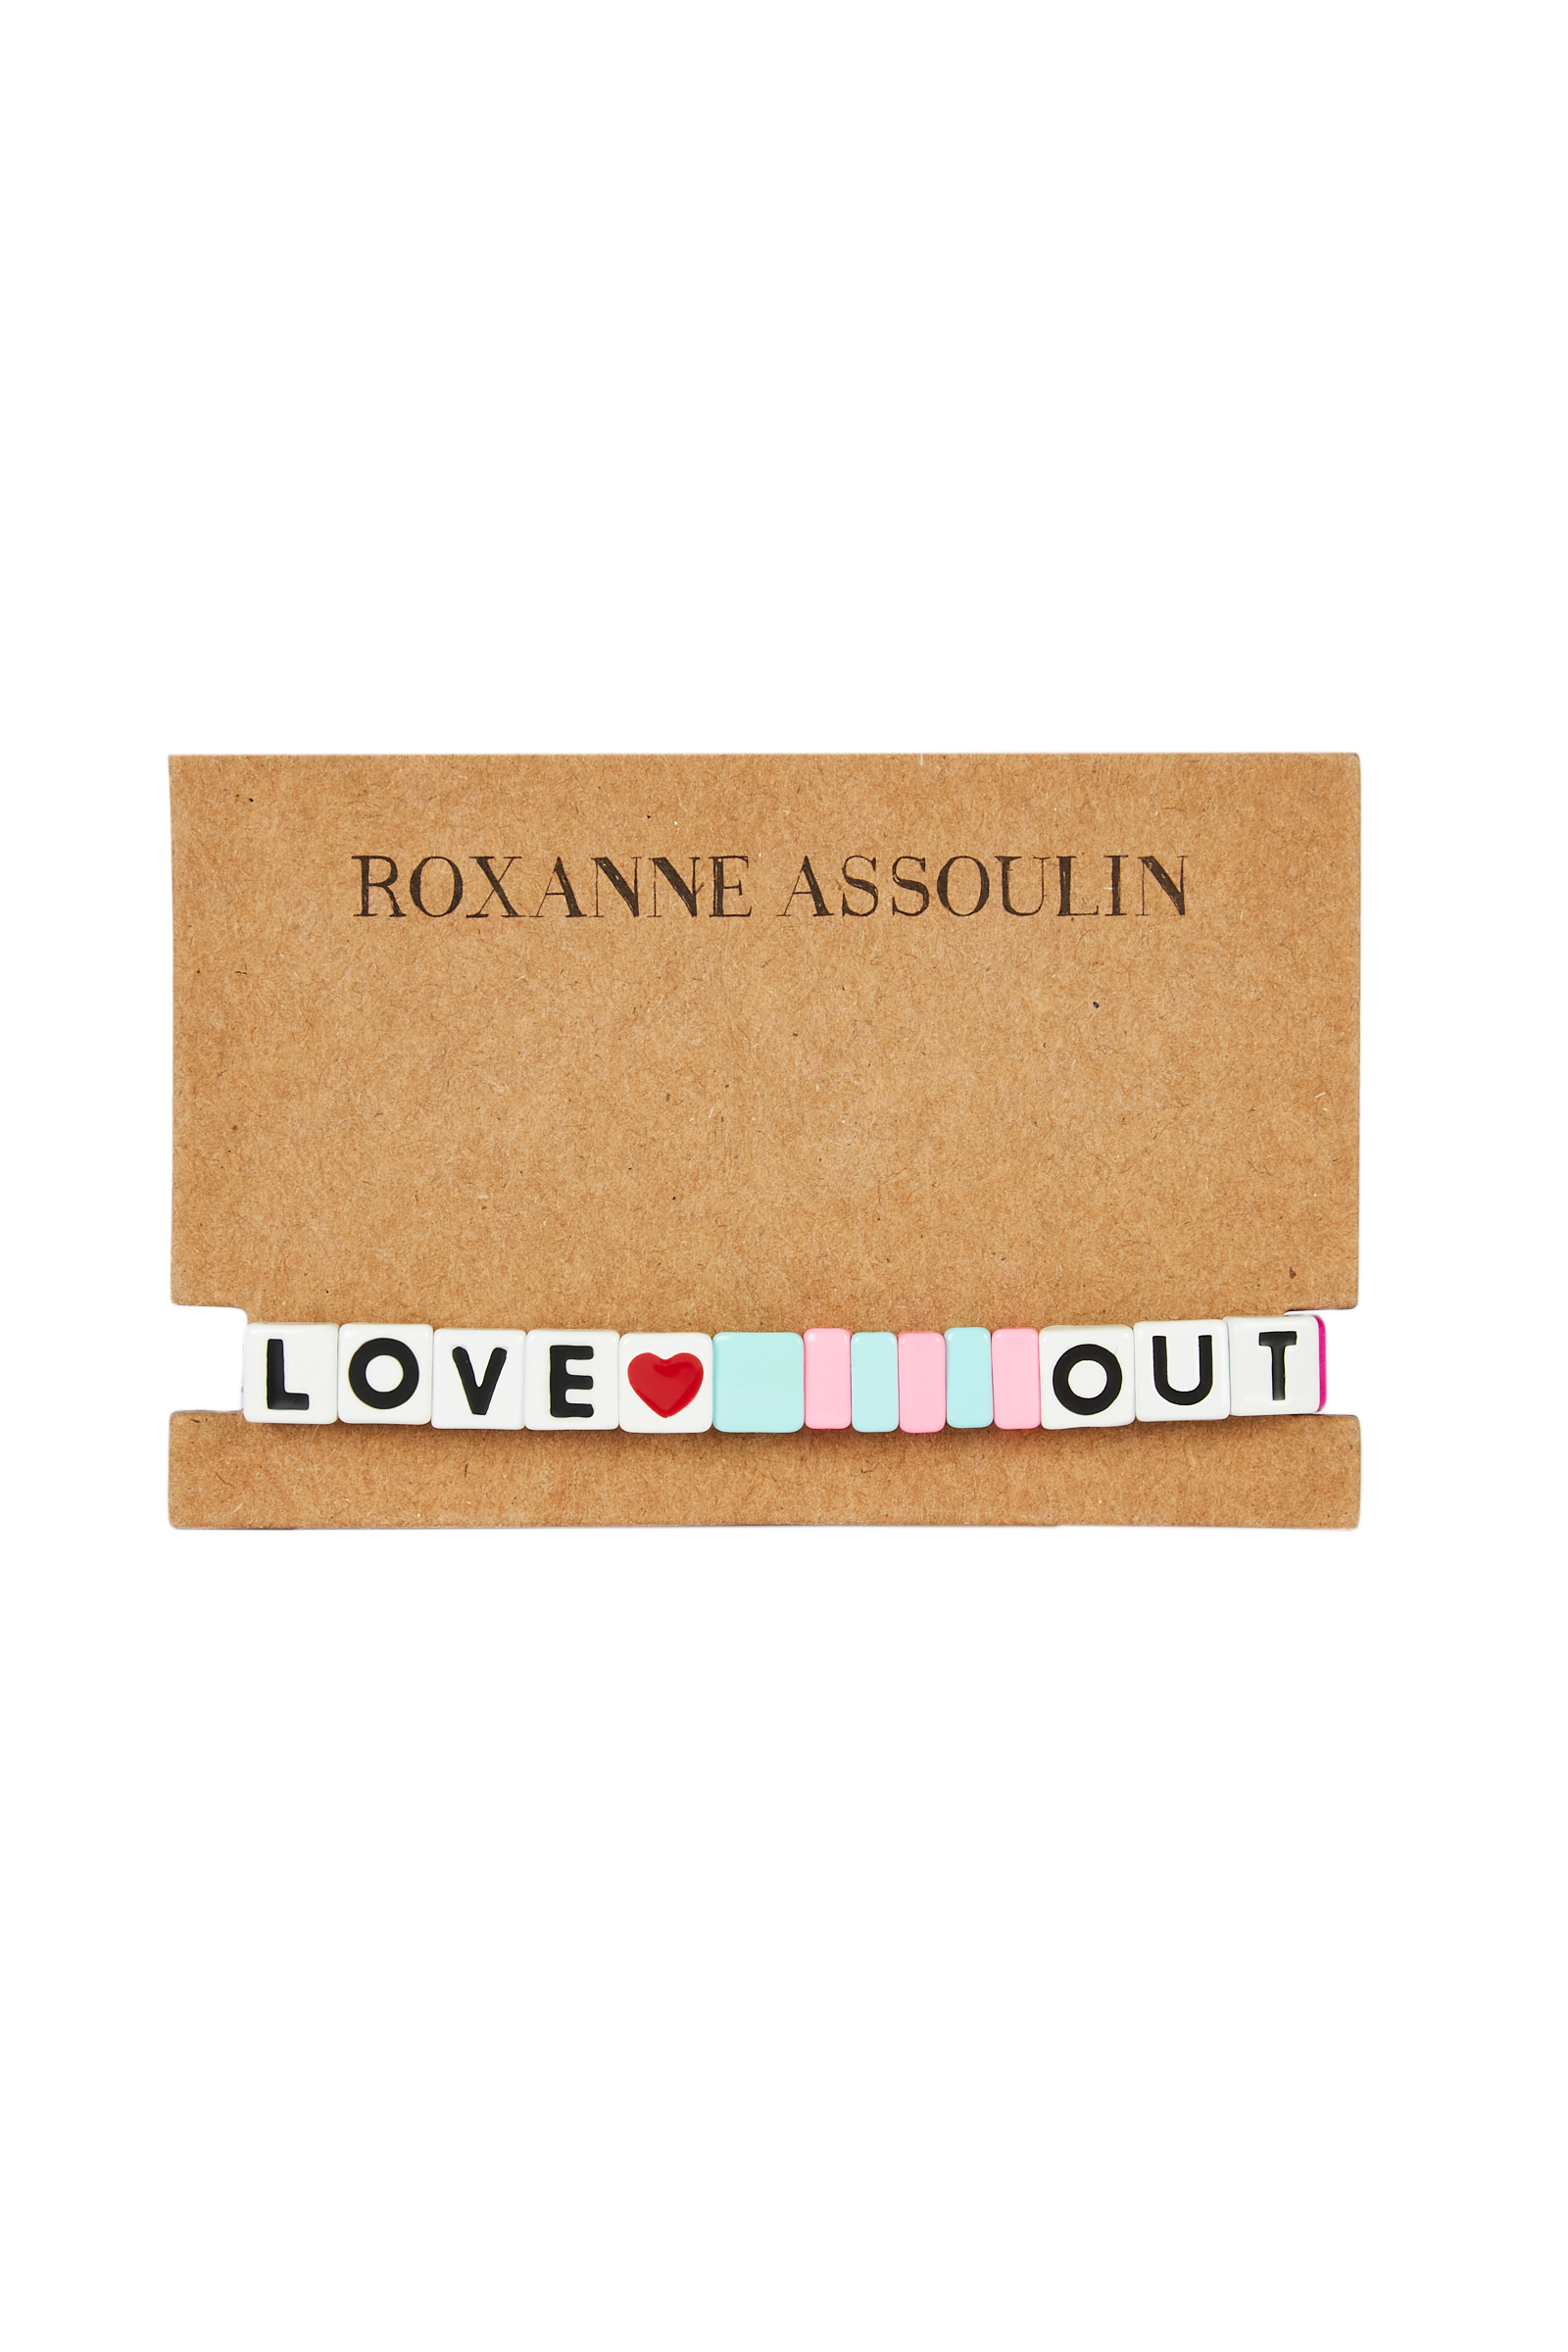 Roxanne Assoulin - Love Out Loud 